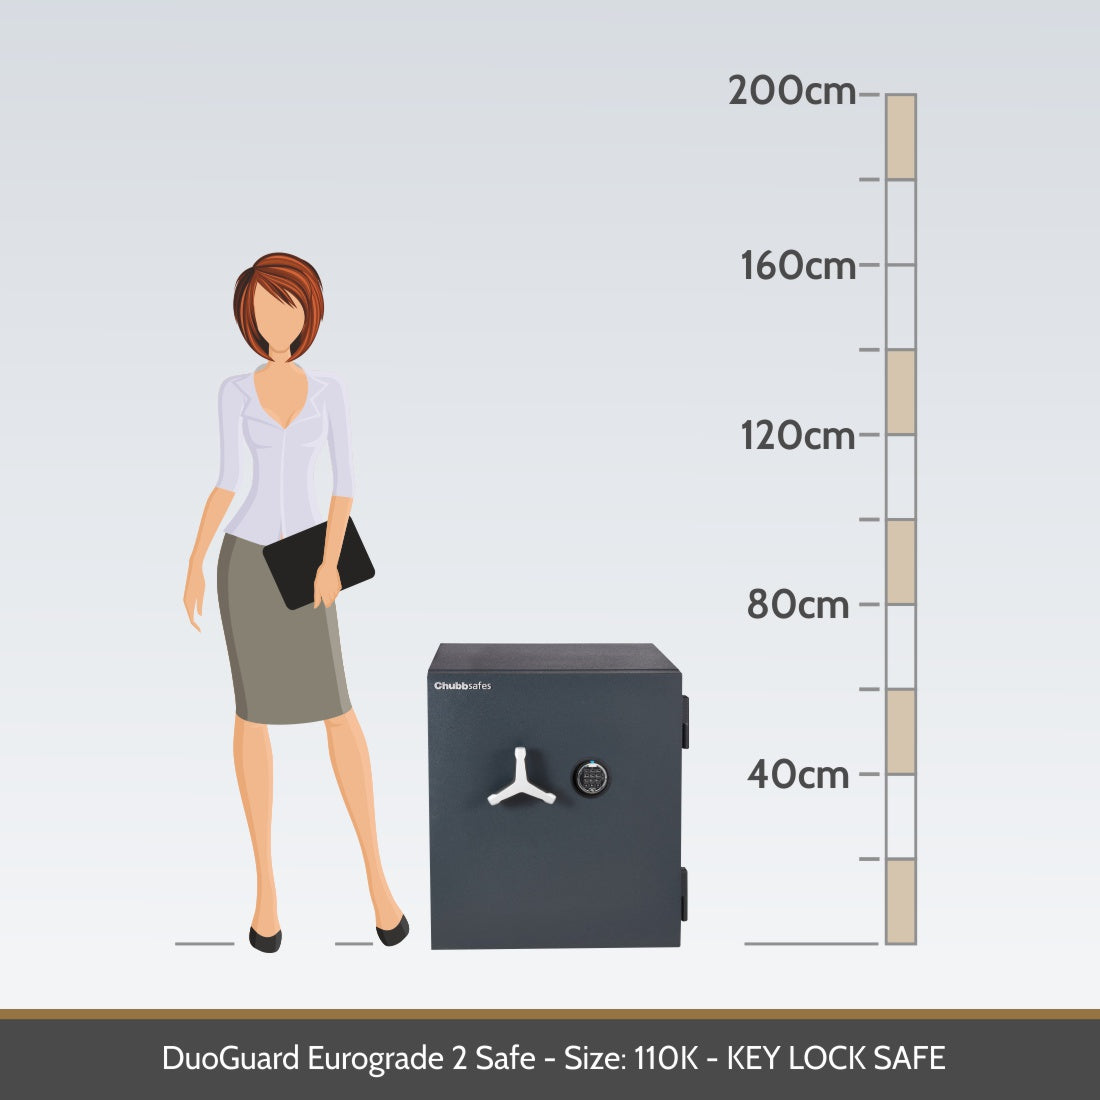  DuoGuard Eurograde 2 Safe Size 110E Digital Lock